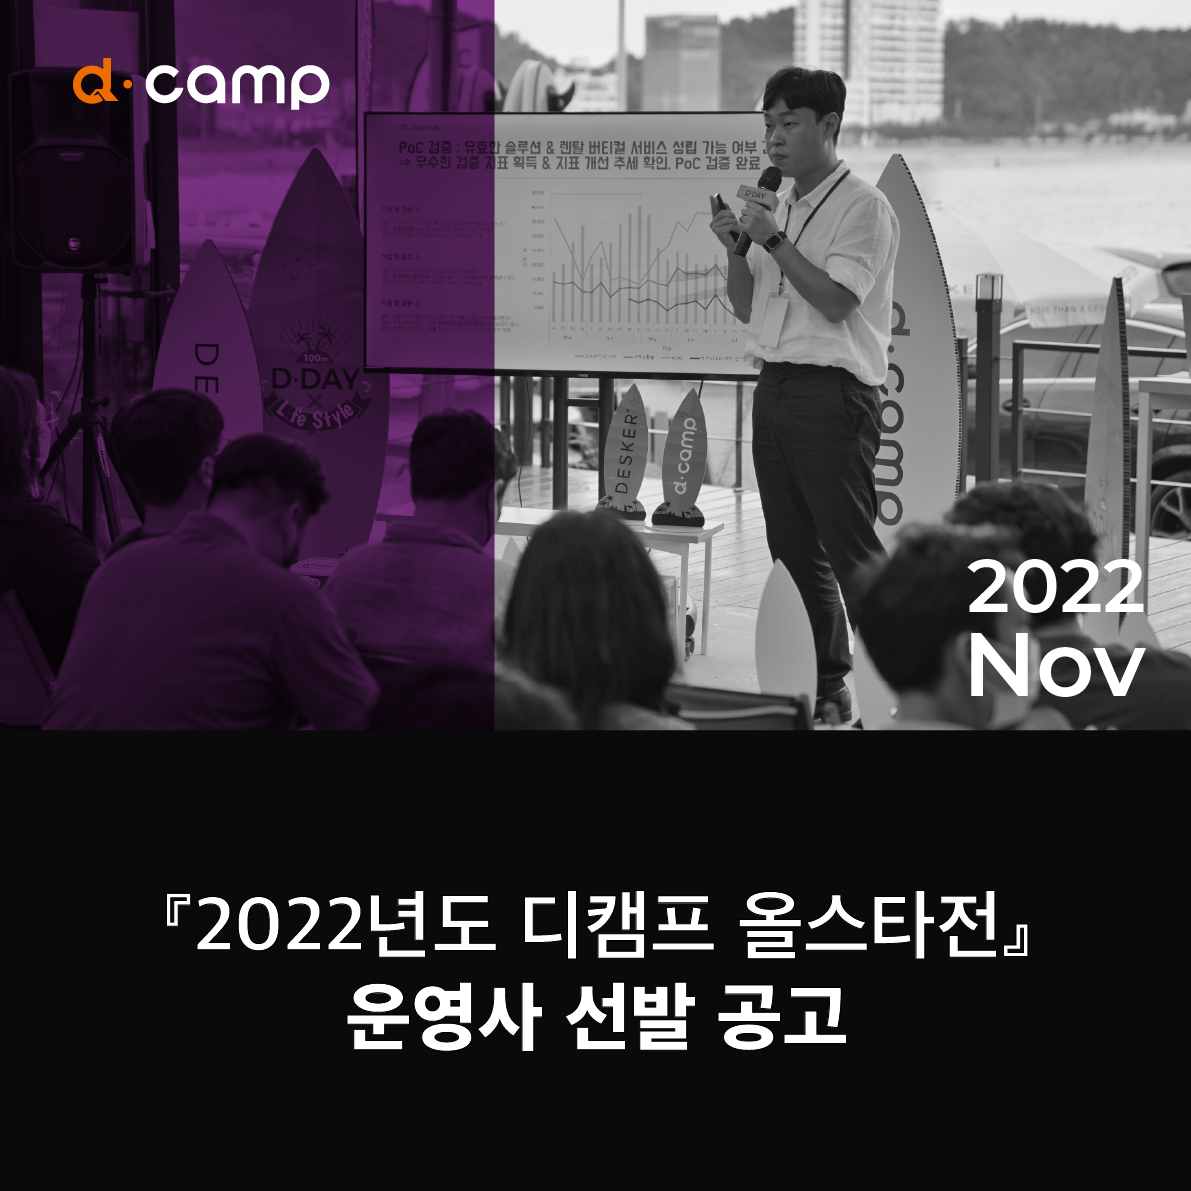 『2022년도 디캠프 올스타전』 운영사 선발 공고 의 웹포스터